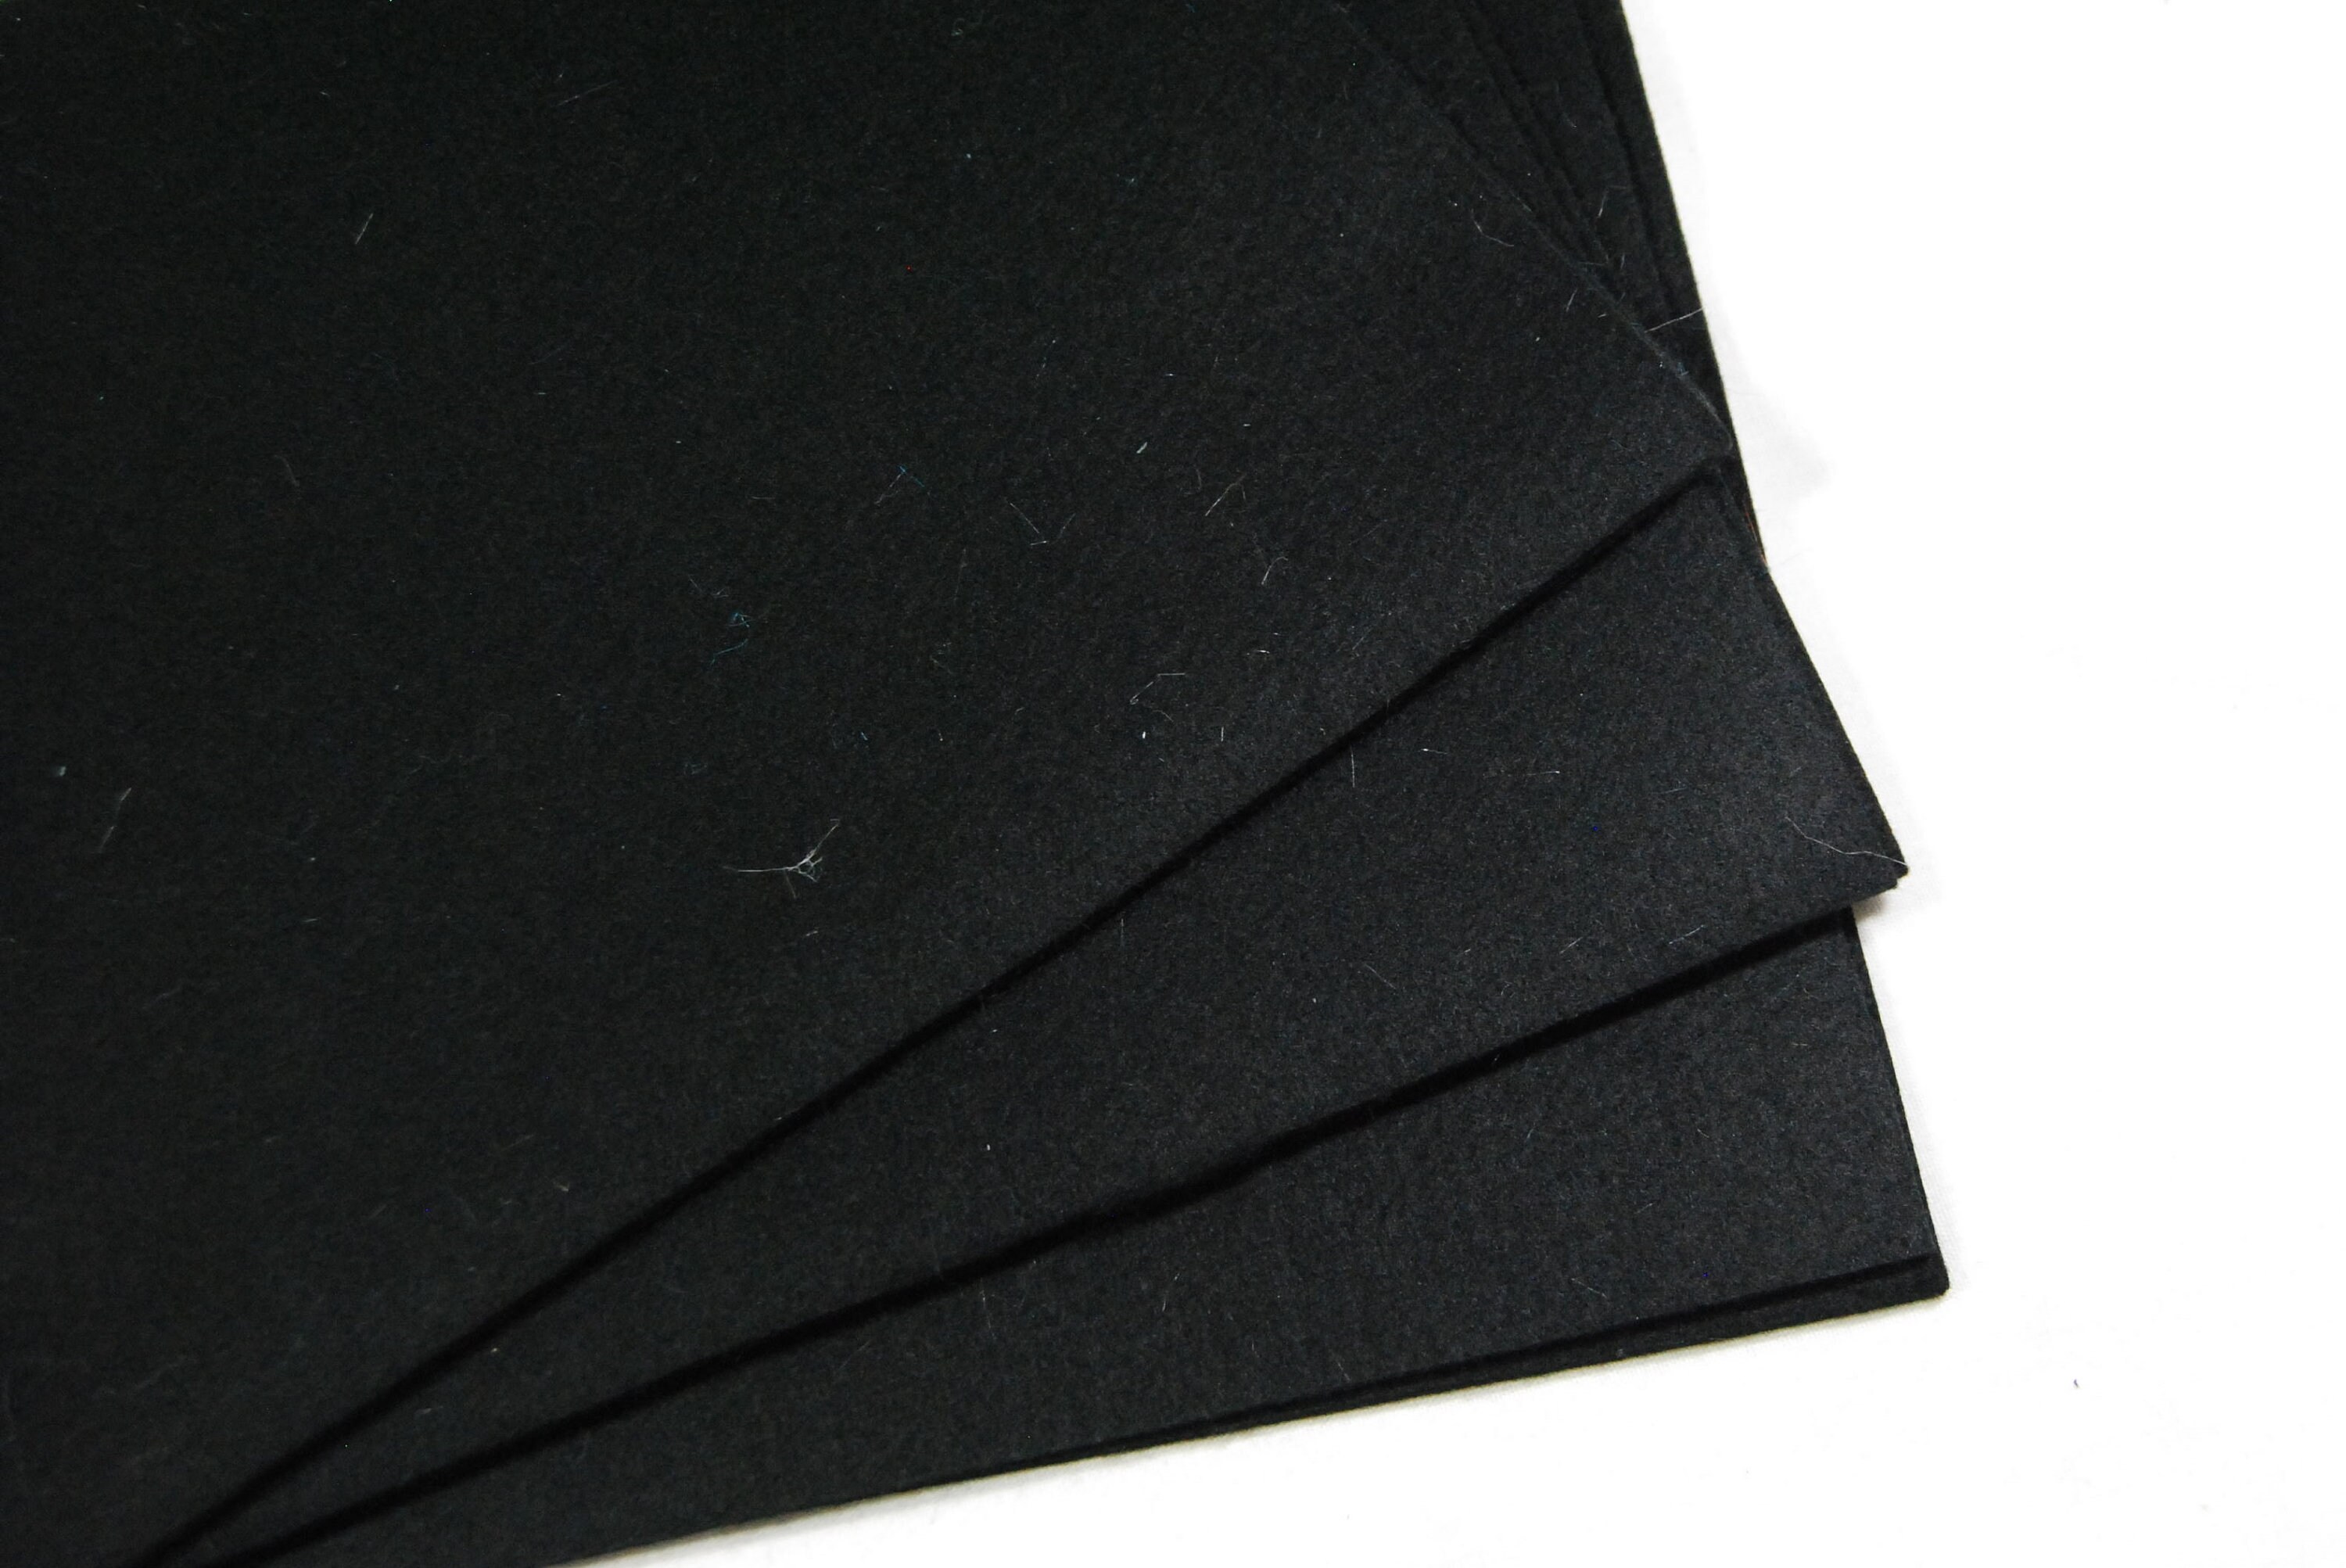 20x90cm Felt Fabric Material Soft Craft Felt 20 Colours Soft